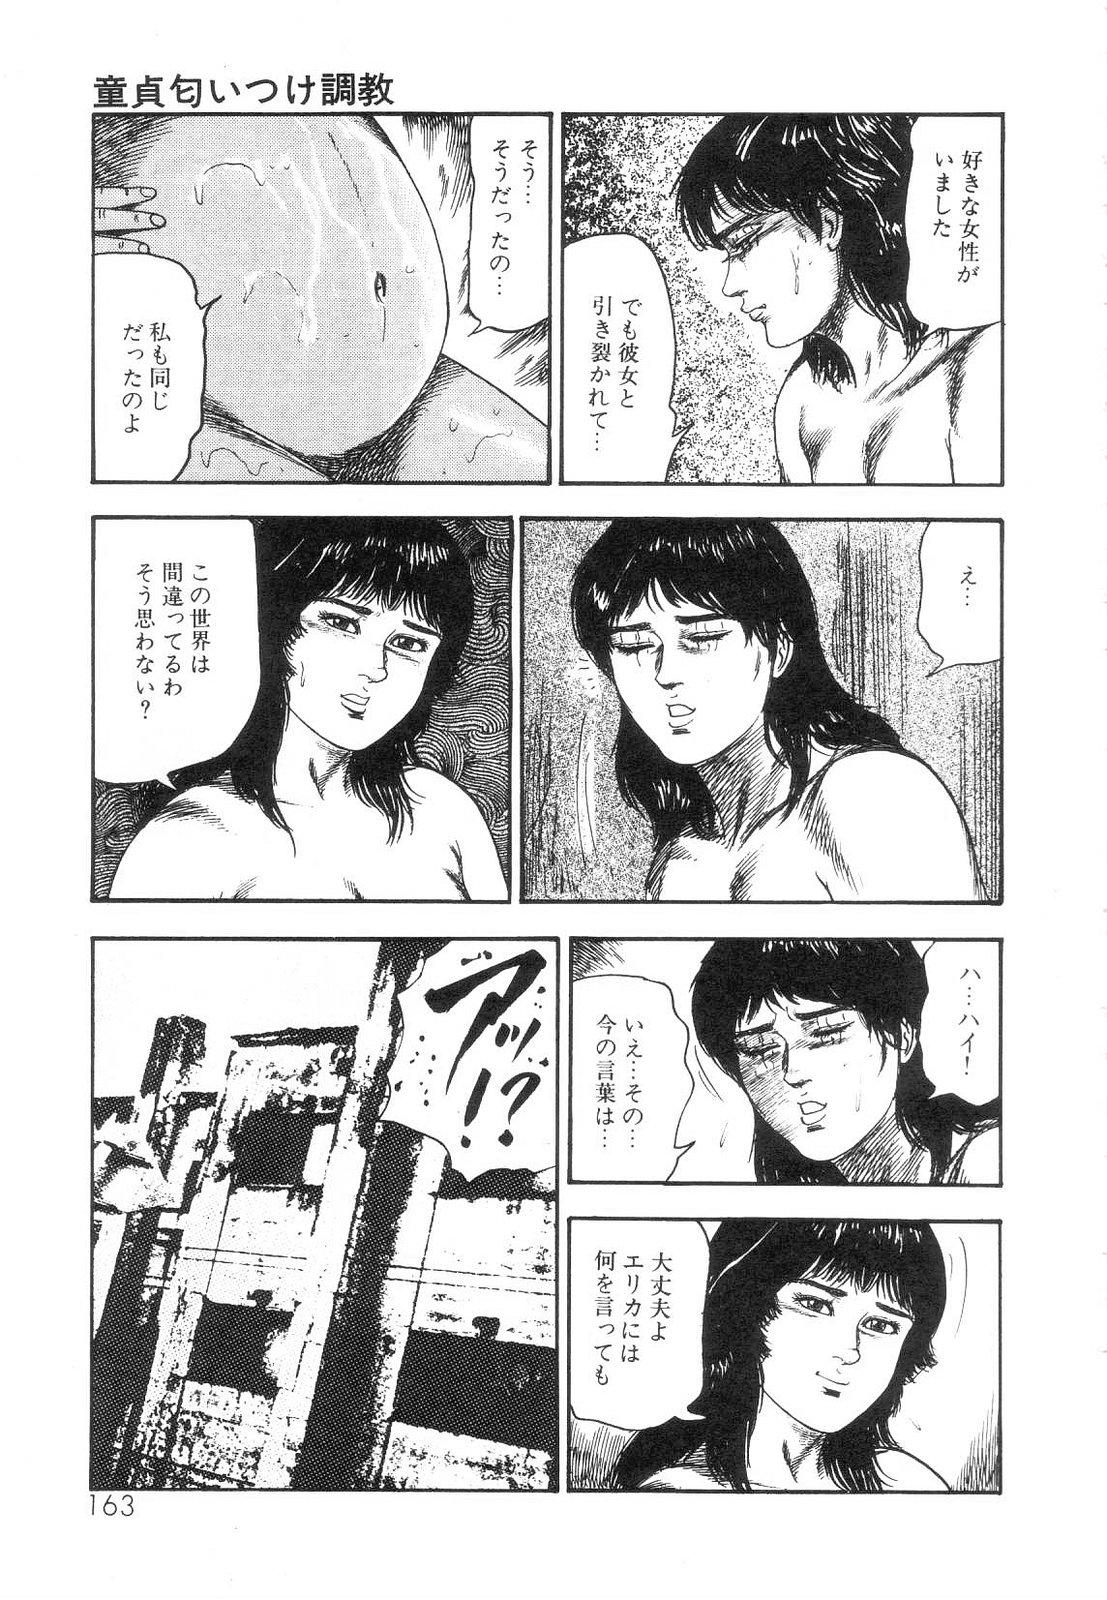 Shiro no Mokushiroku Vol. 5 - Ninshoujo Erika no Shou 164